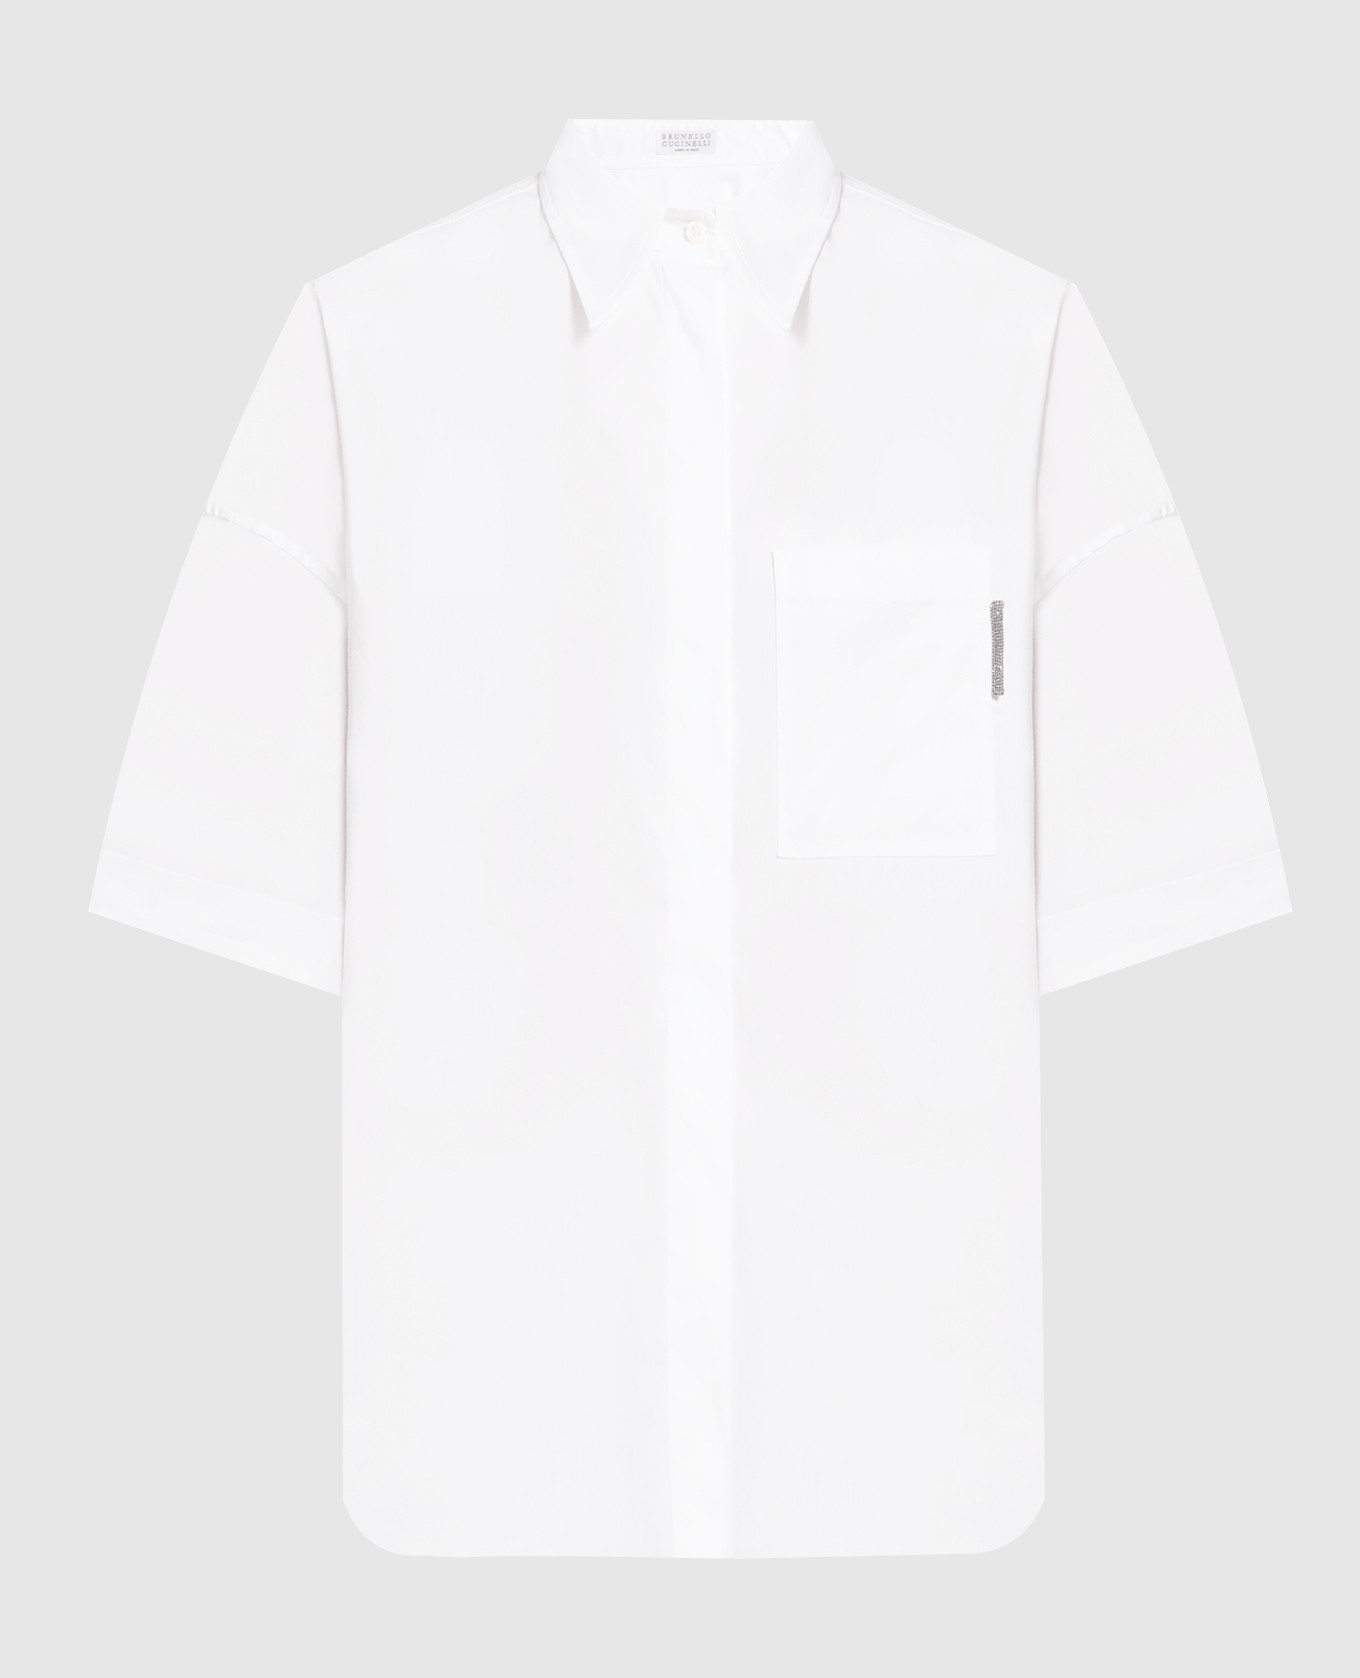 White shirt with monil chain